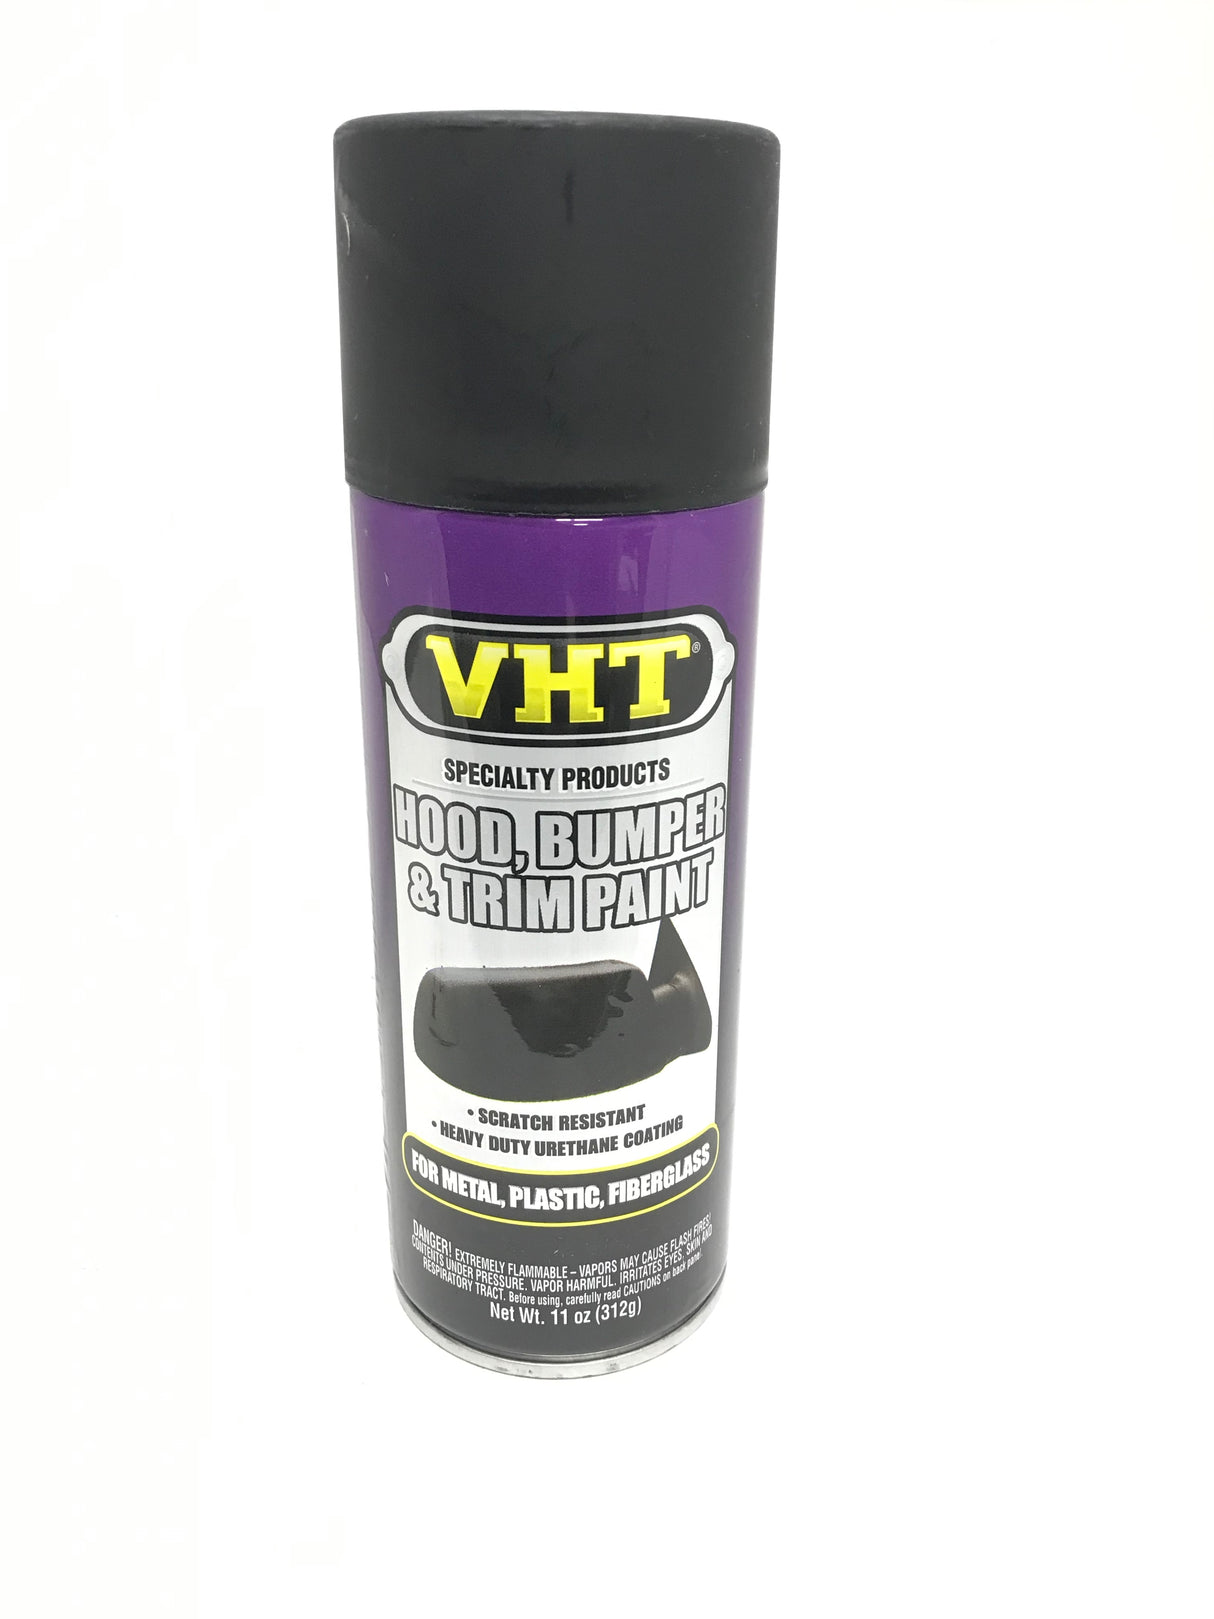 VHT SP27 FLAT BLACK Scratch resistant Hood, Bumper & Trim Paint - 11 oz